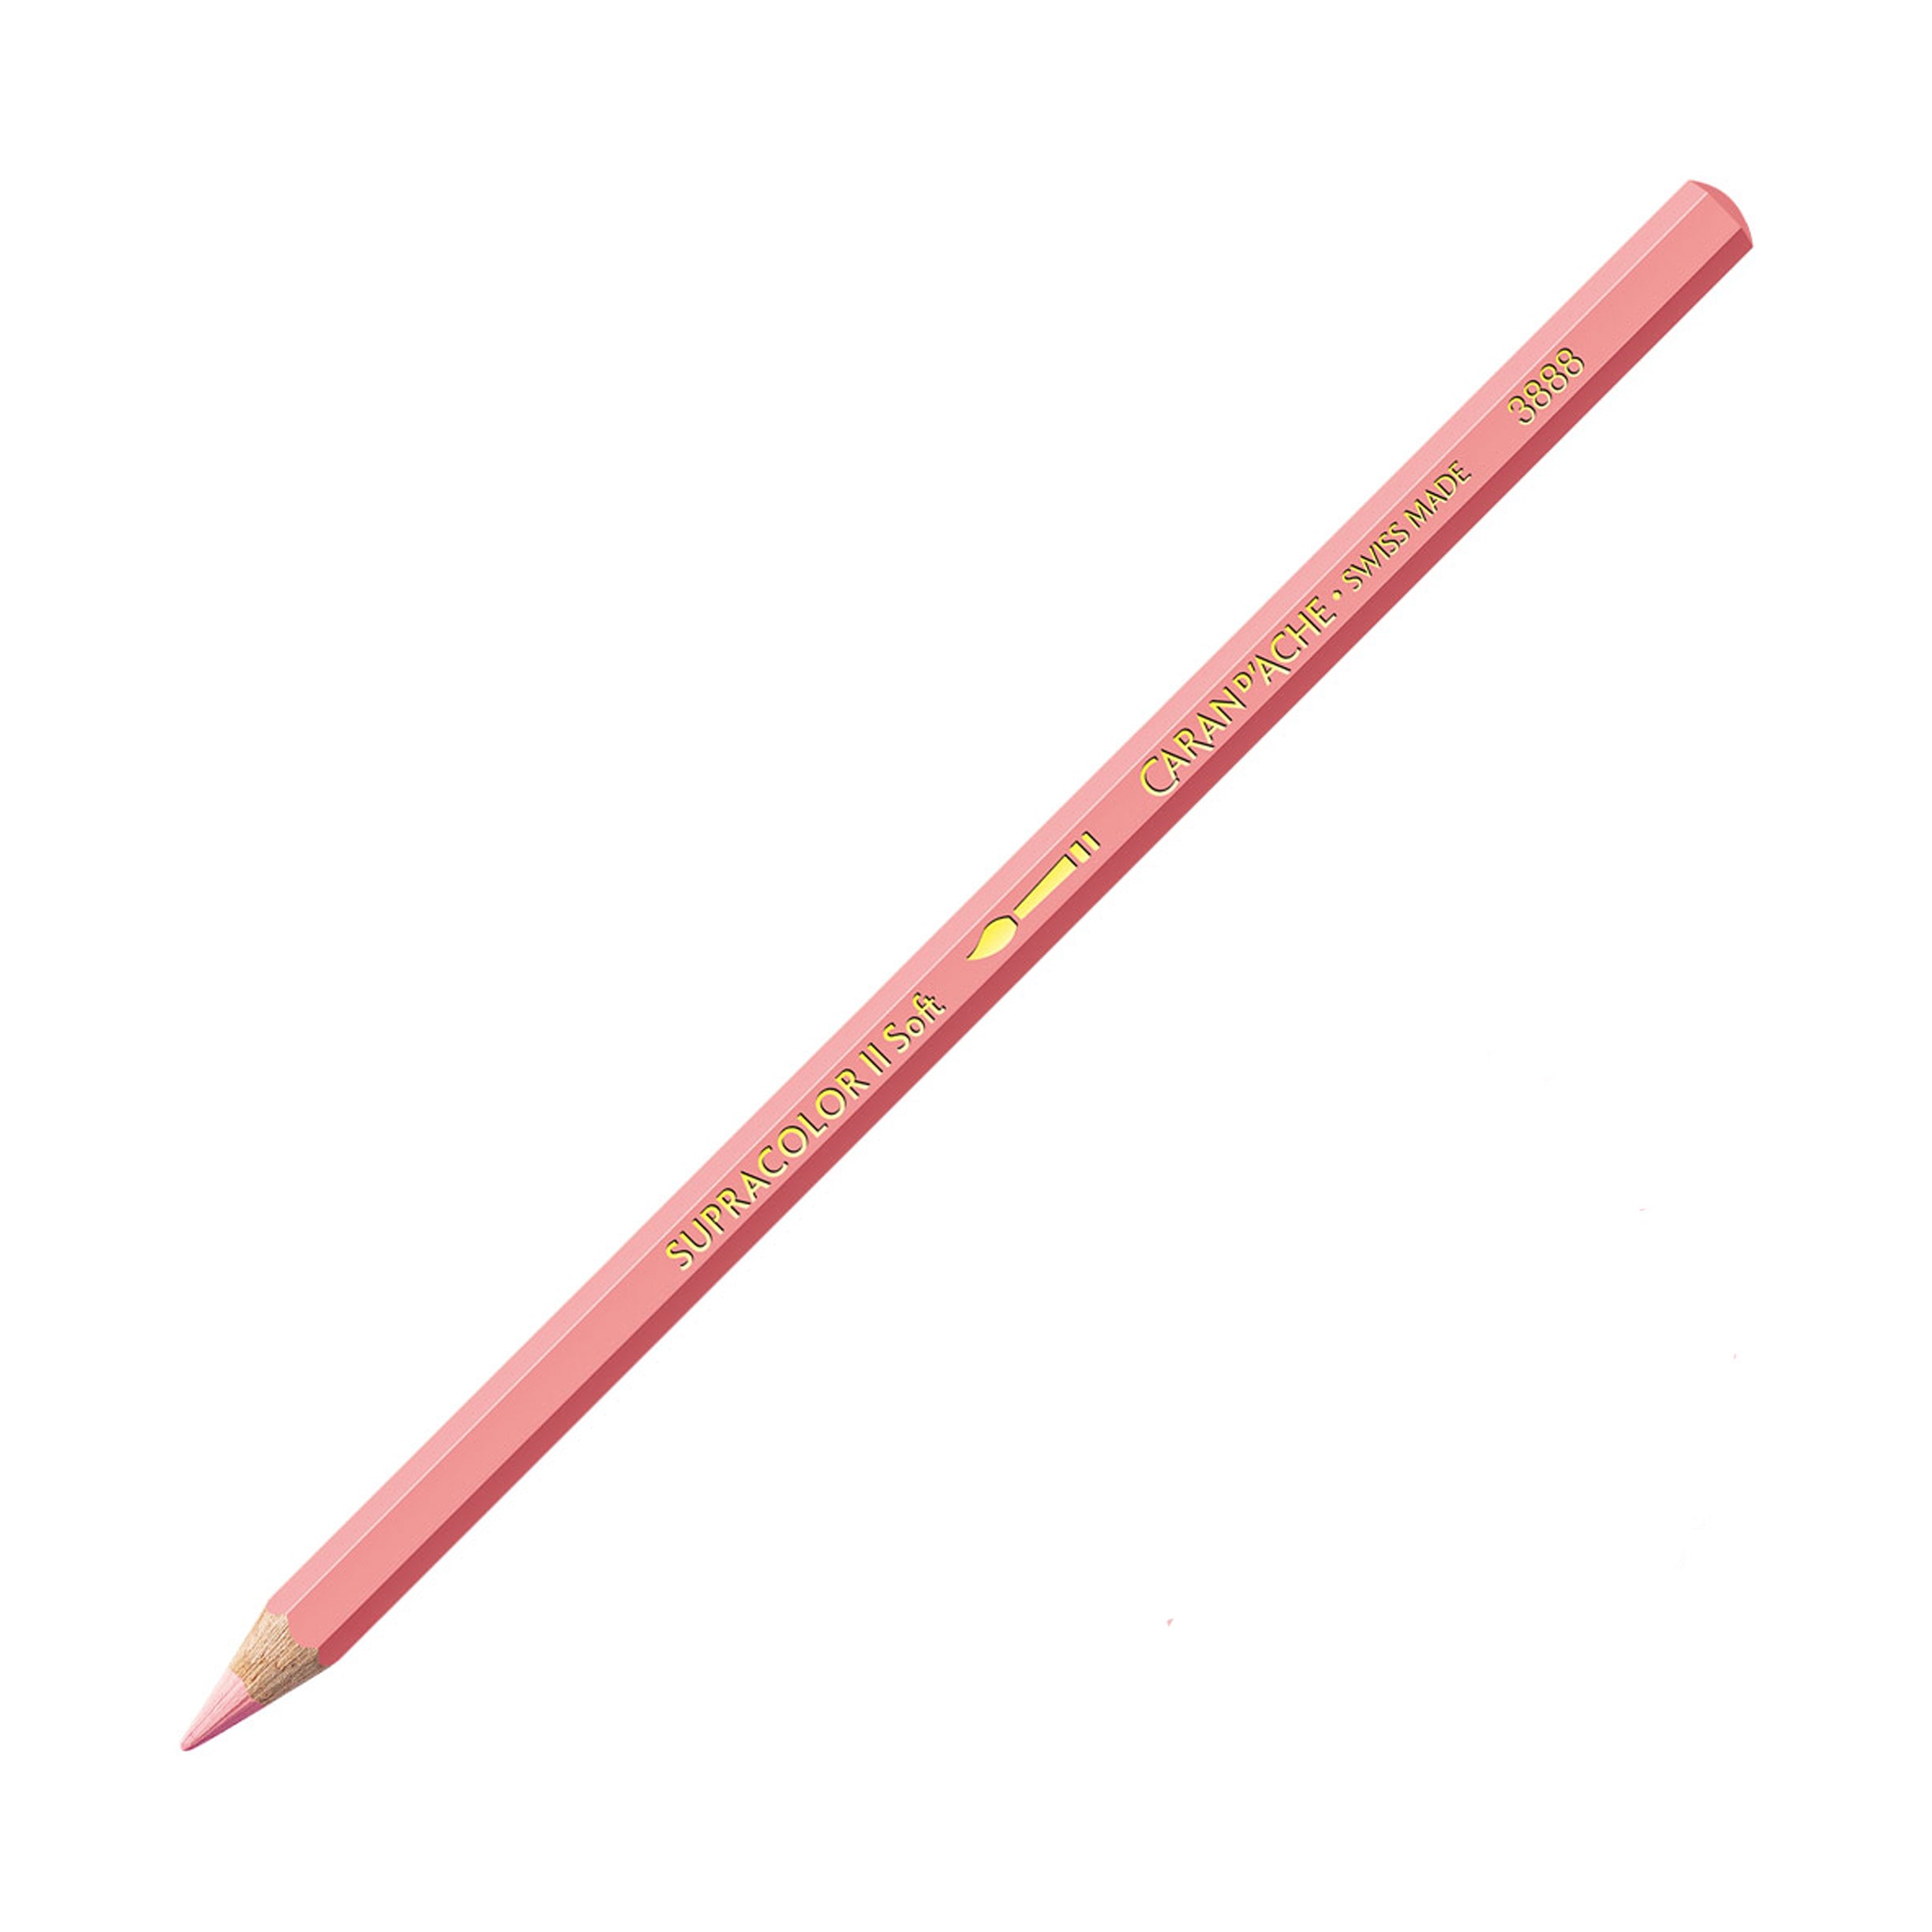 Caran d’Ache Supracolor Soft Aquarelle Pencil